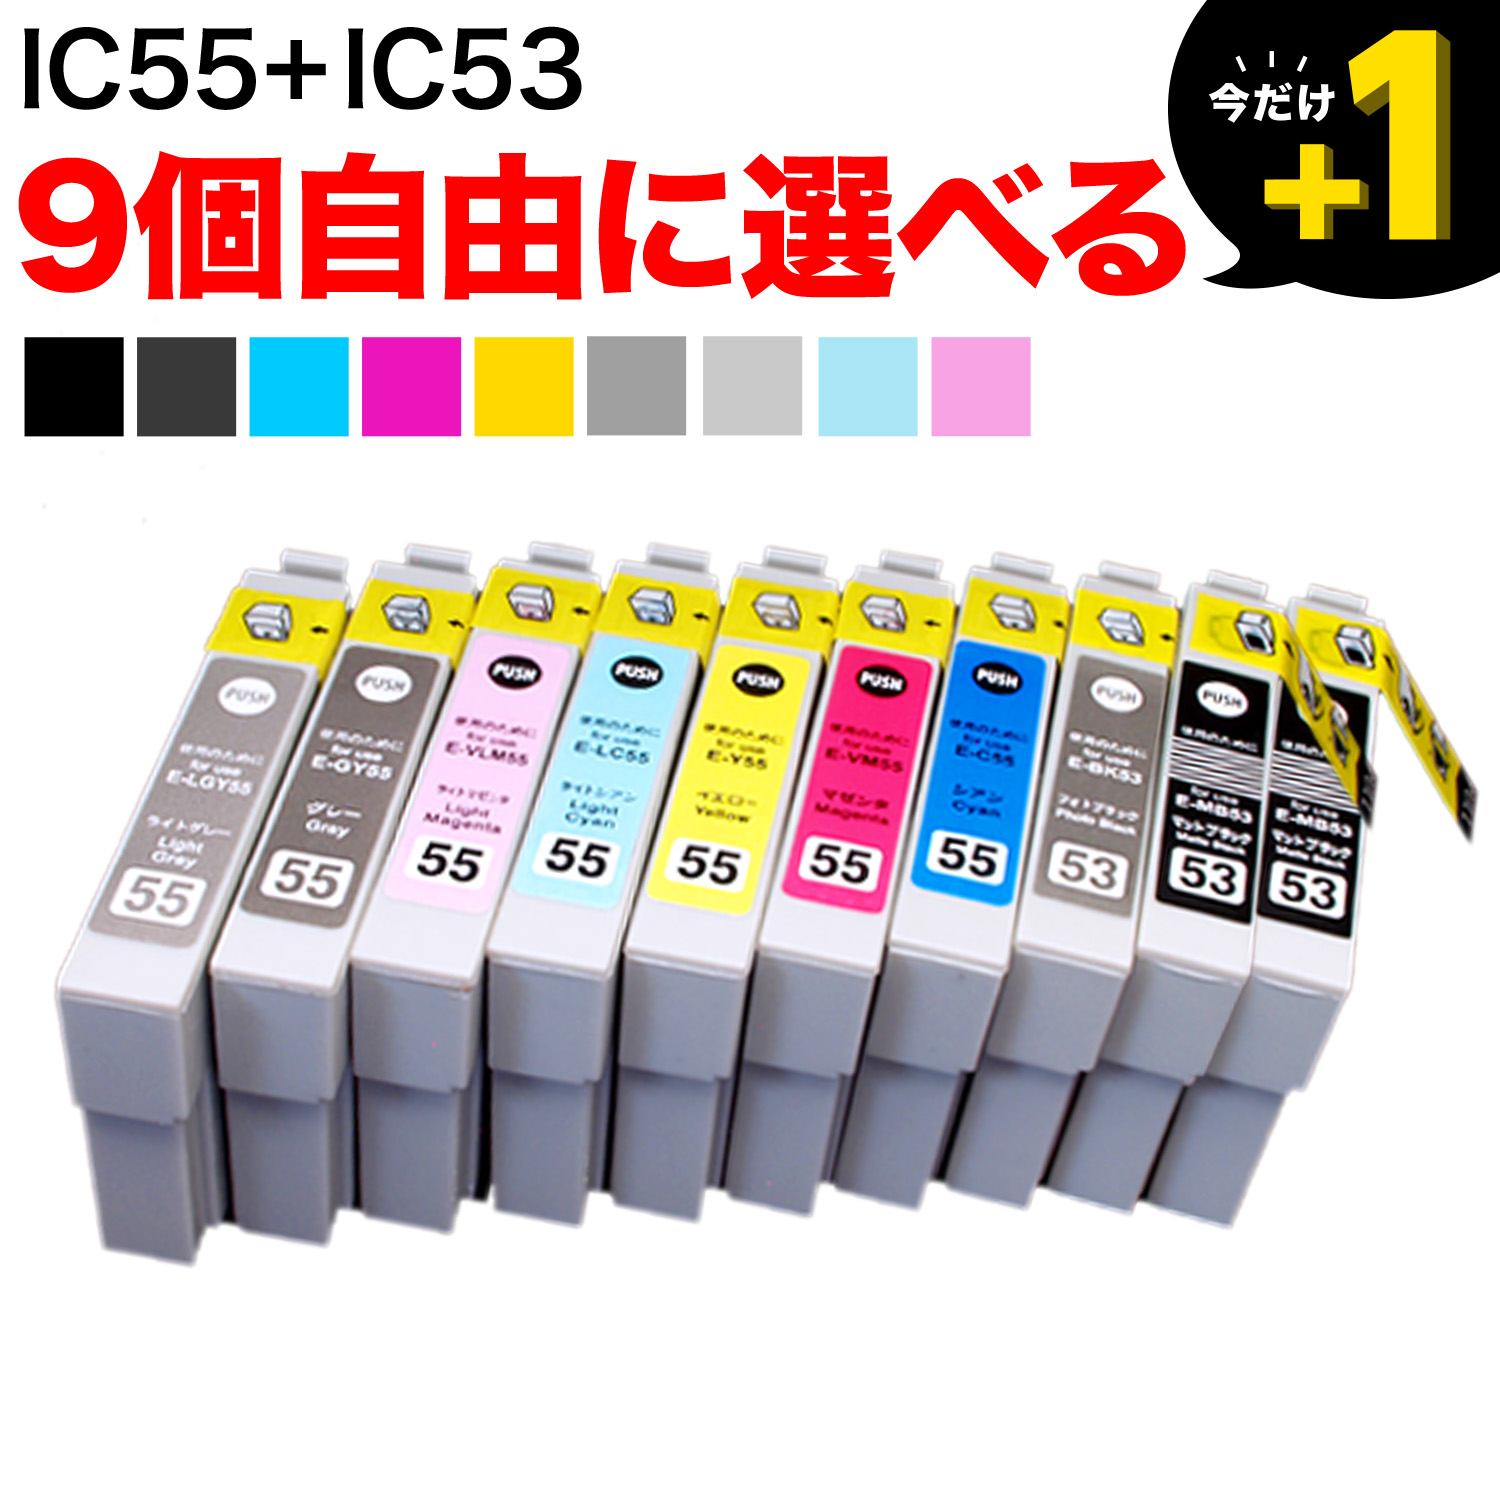 IC エプソン用 互換インク 自由選択9個セット フリーチョイス ※BK